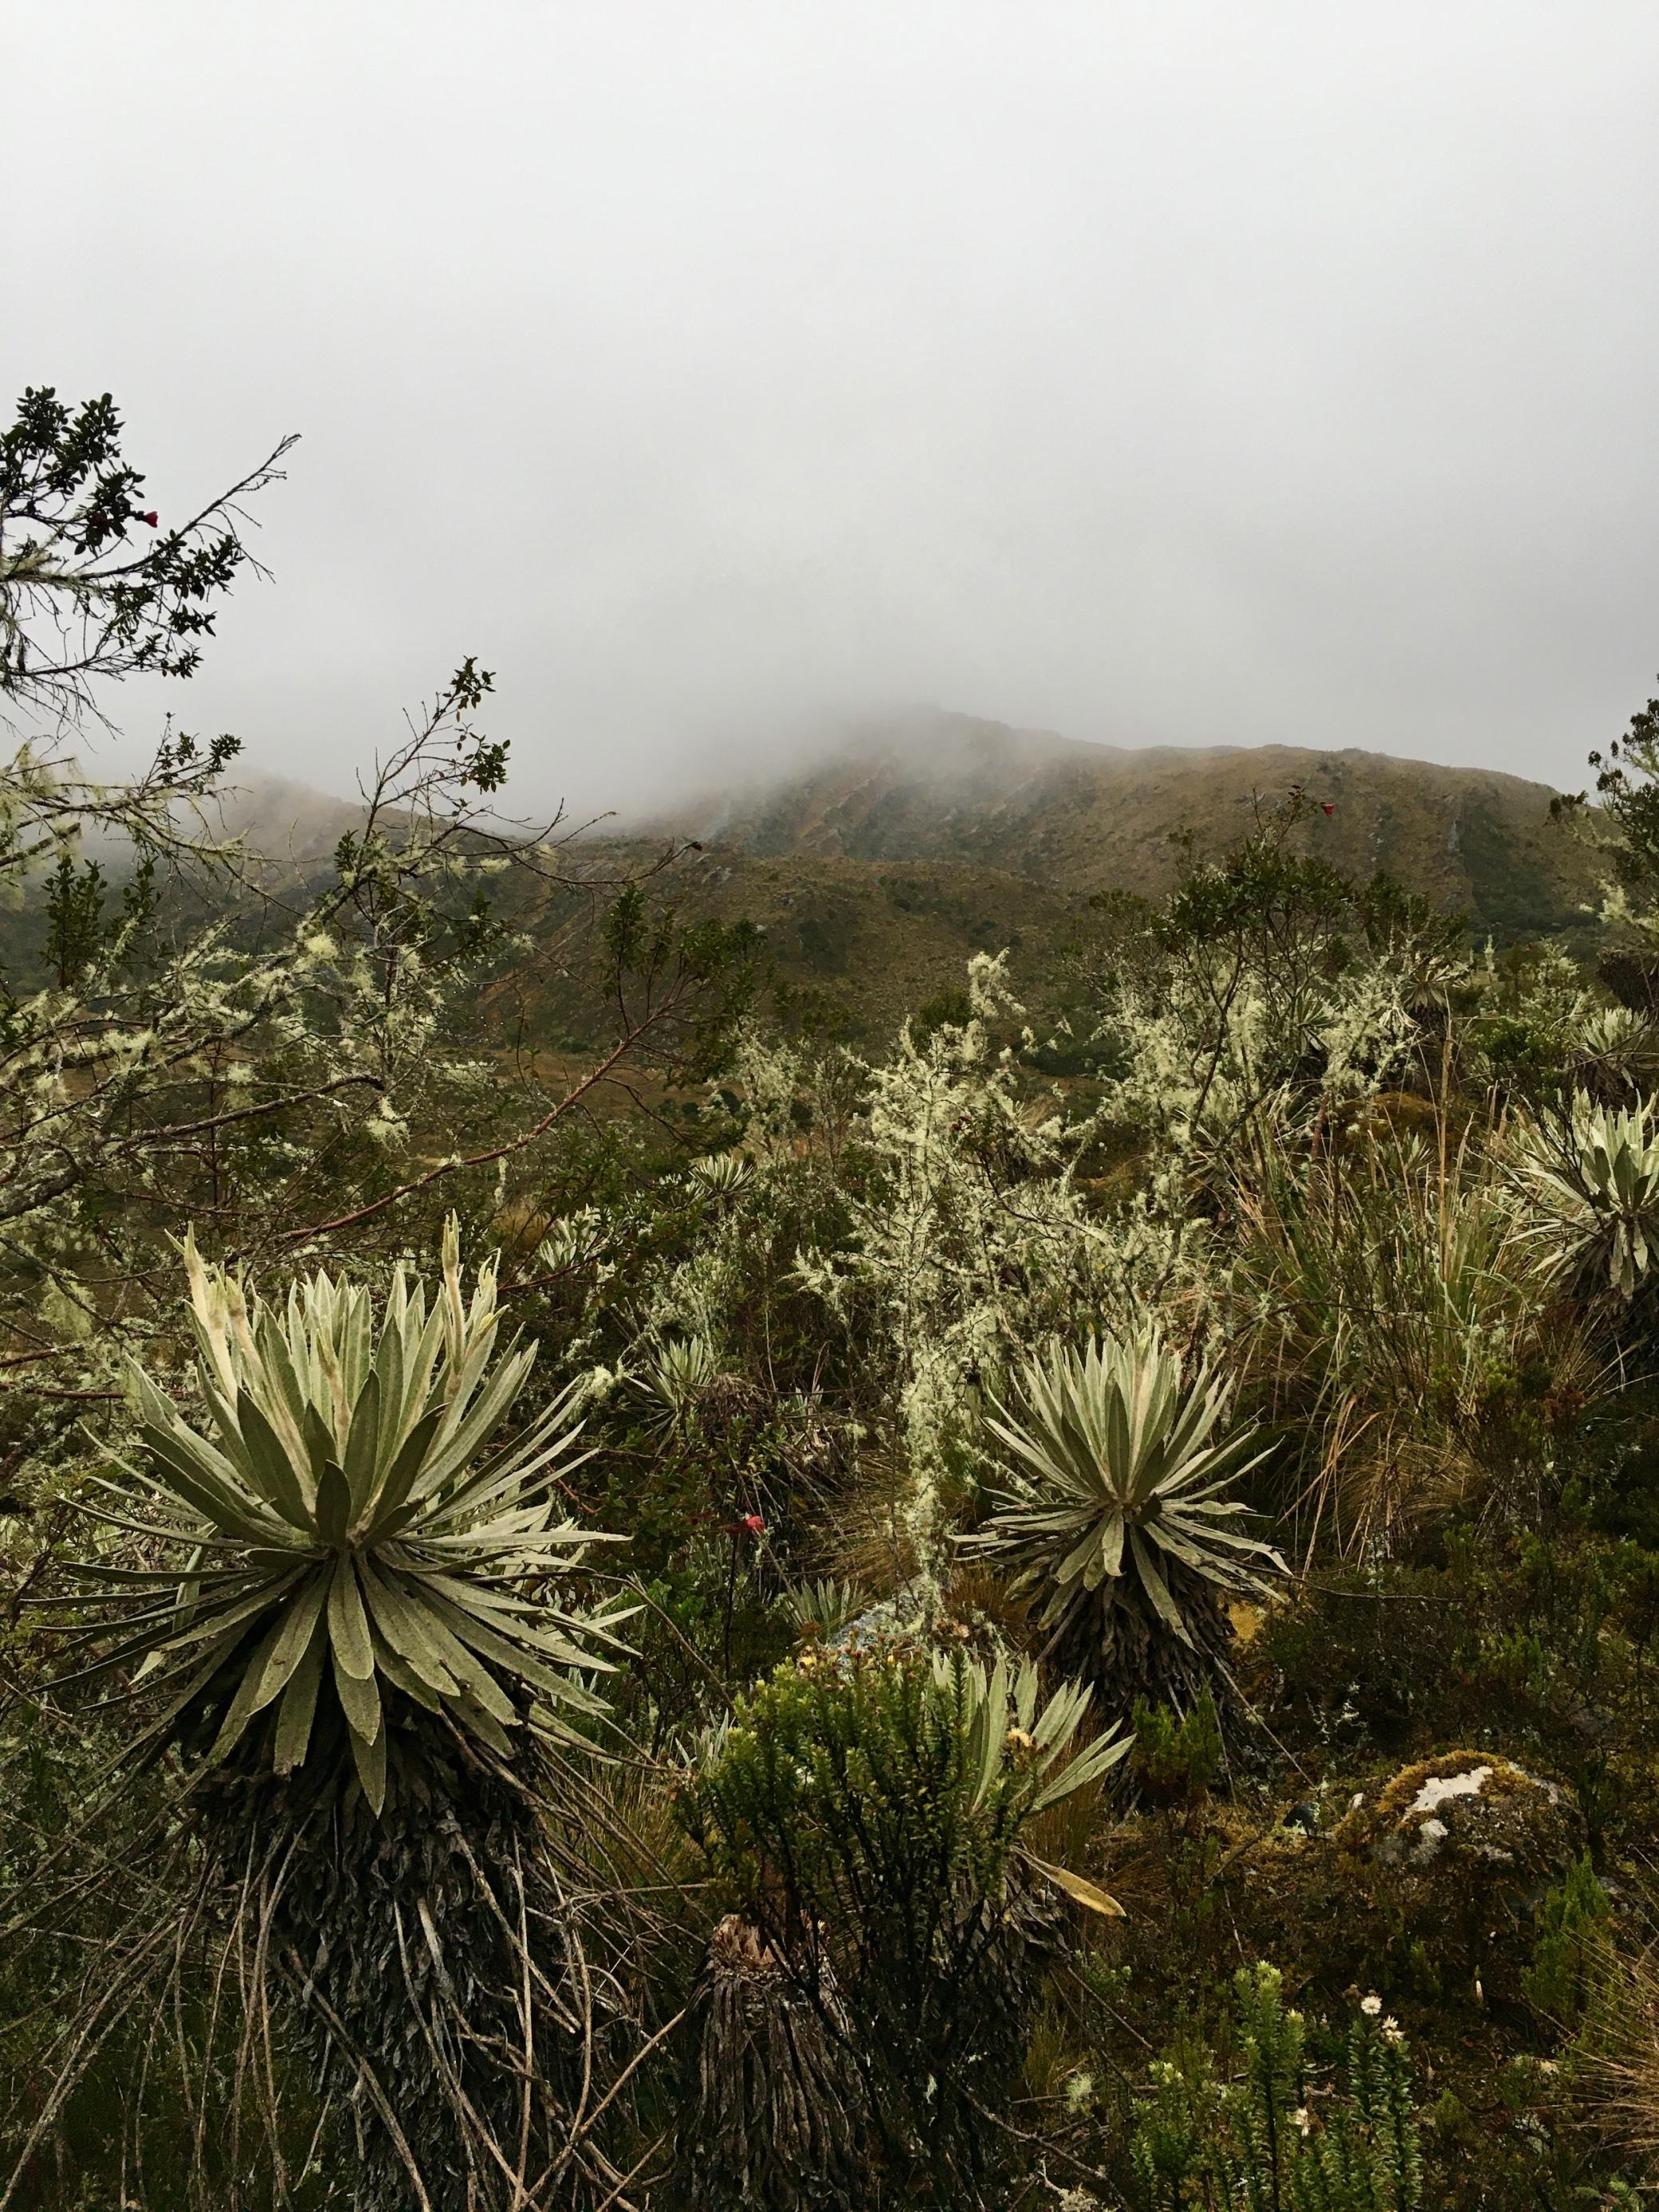 Eine Berglandschaft in Grün, Weiß, Braun und Grau. Eine Wolkenwand hängt über den Bergen. Im Vordergrund sind Pflanzen zu sehen, die an Mini-Palmen erinnern. Das sind die Frailejones.